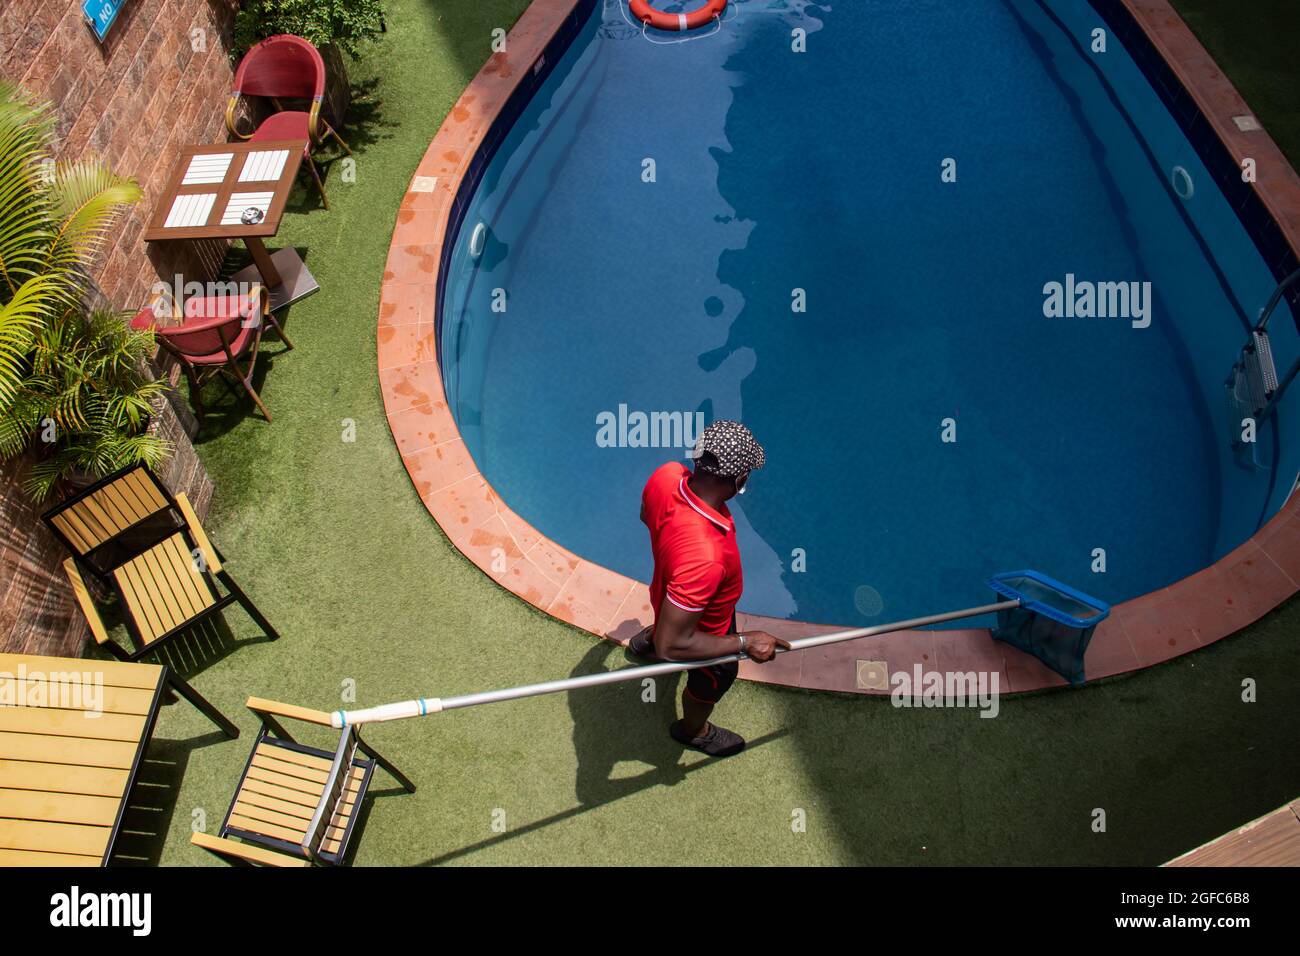 Reinigung des Schwimmbads durch den Pool-Typen, mit Netz. Dekorative Pflanzen neben dem Swimmingpool Stockfoto